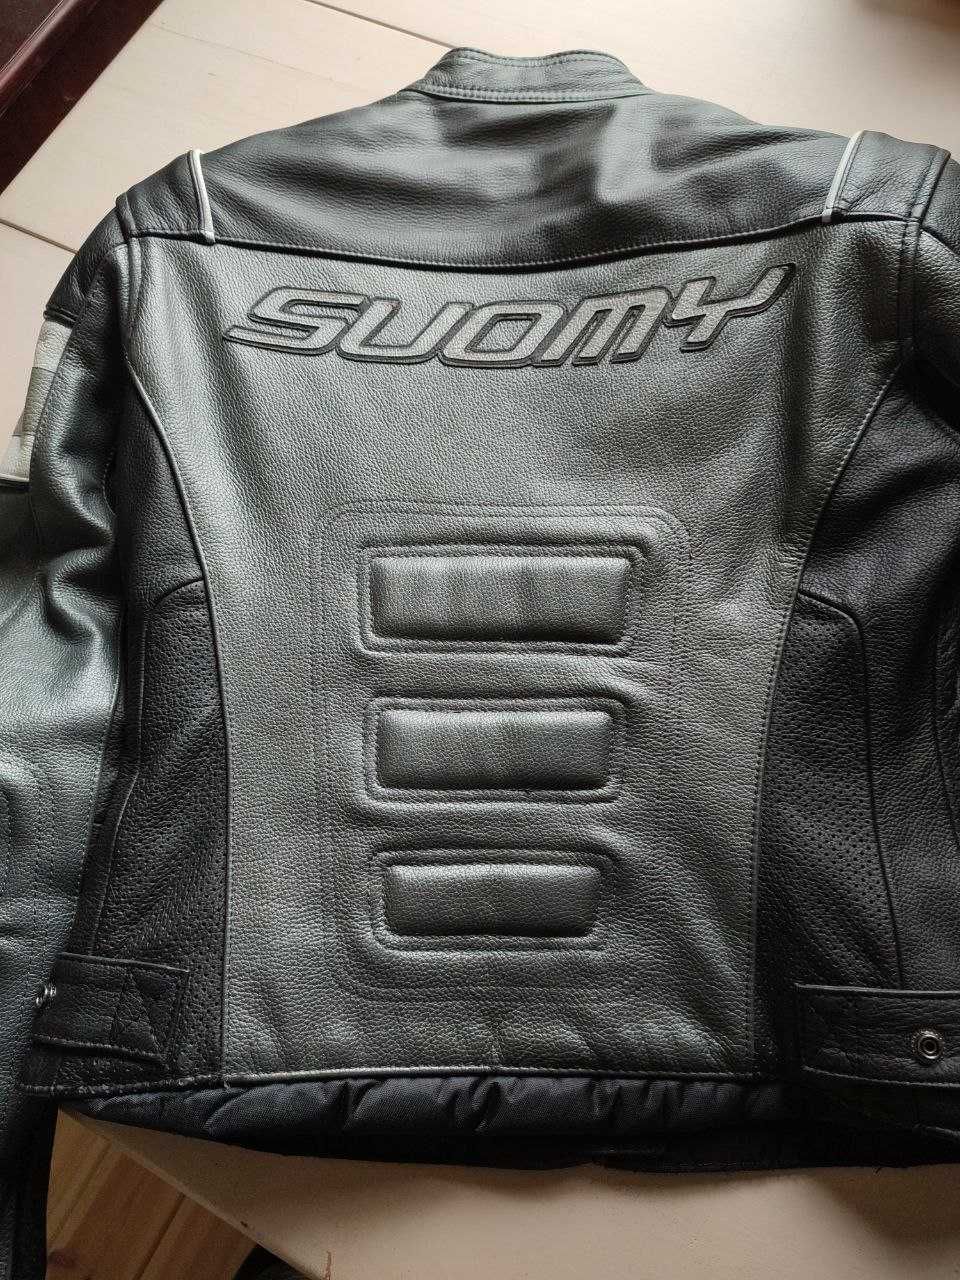 Damska skórzana kurtka motocyklowa włoskiej firmy Suomy rozm.L